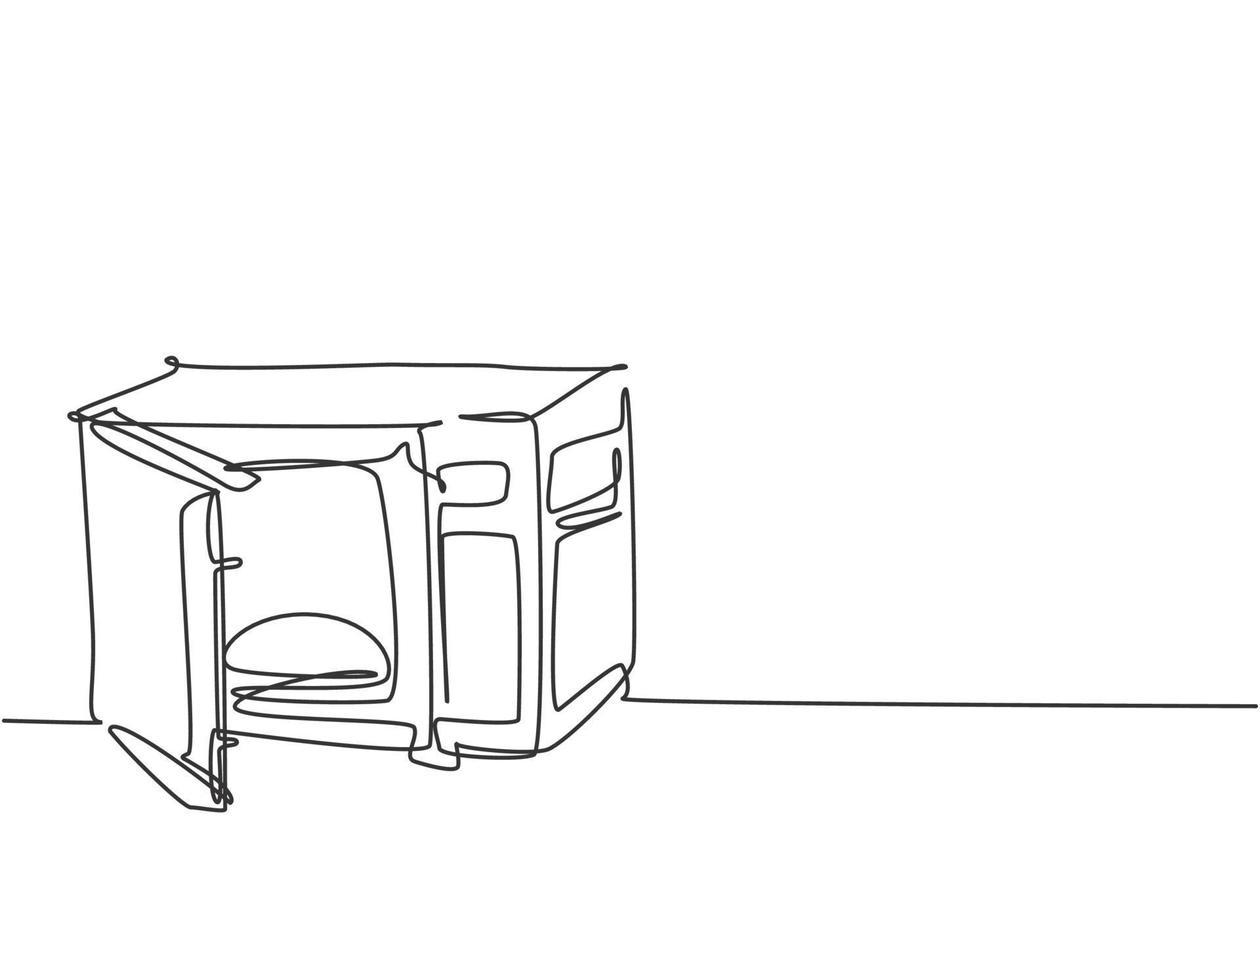 Dibujo de una sola línea continua de horno, estufa, microondas, utensilio doméstico. concepto de electrodomésticos electrónicos. Ilustración de vector gráfico de diseño de dibujo de una línea moderna